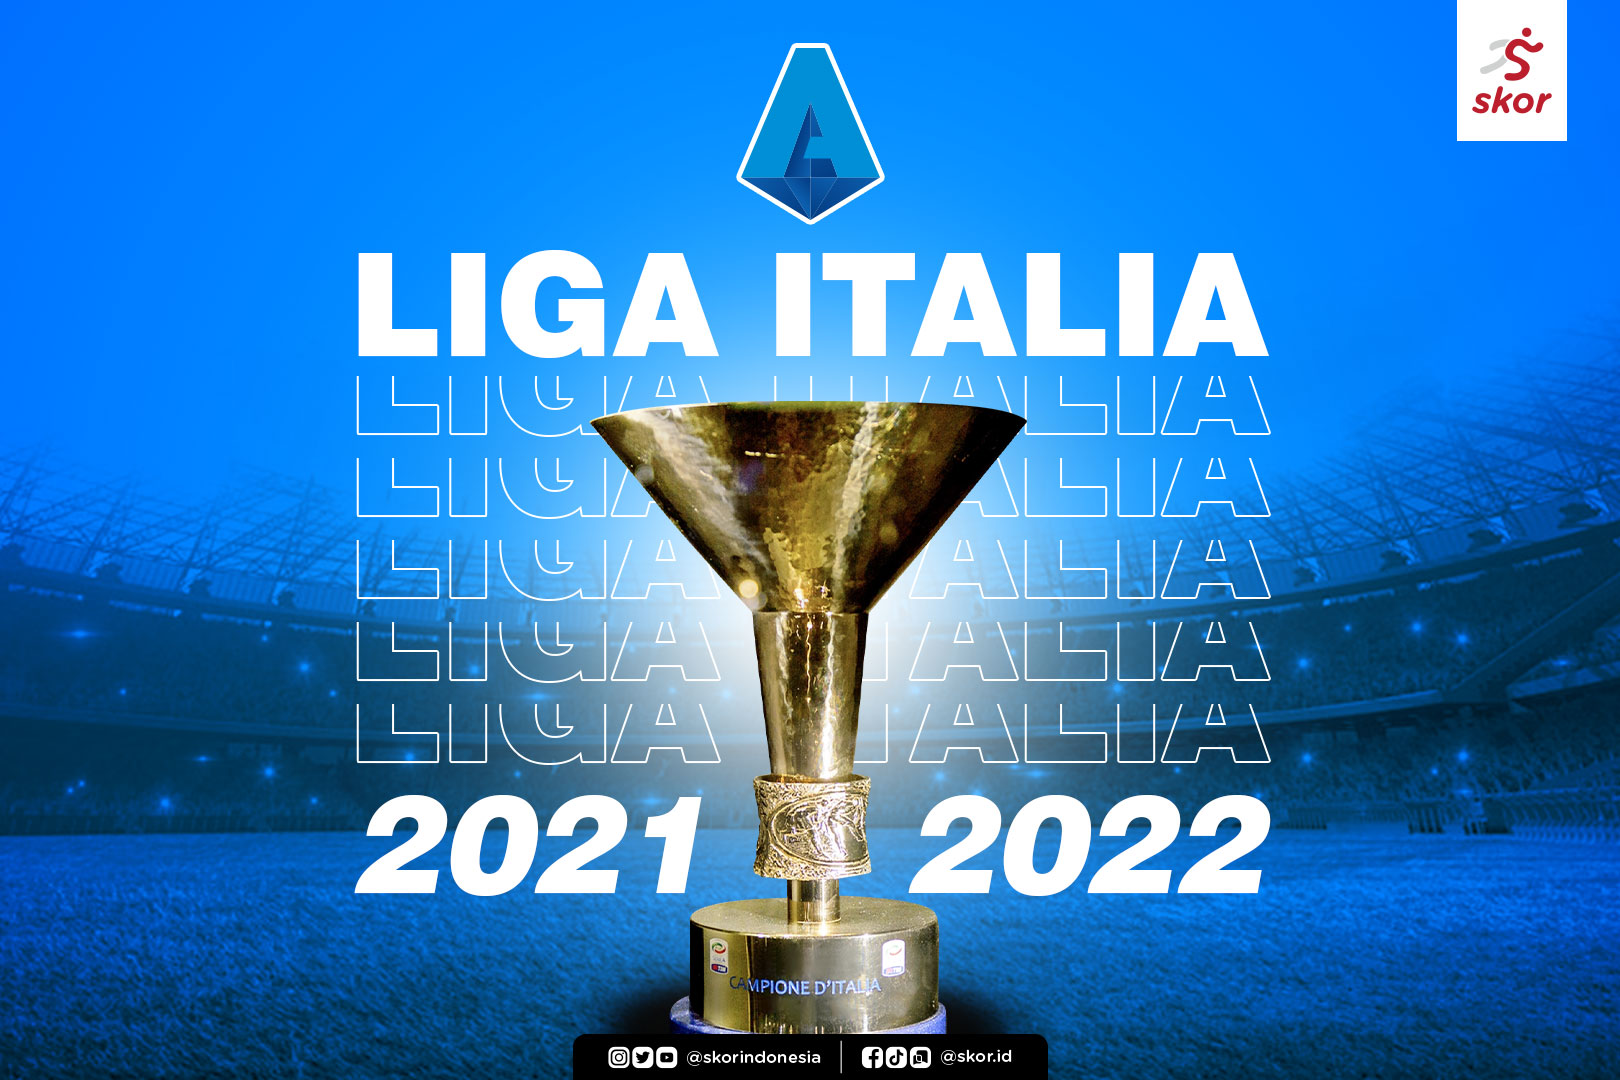 Daftar Tim Liga Italia 2021-2022 yang Paling Sering Cetak Gol Telat